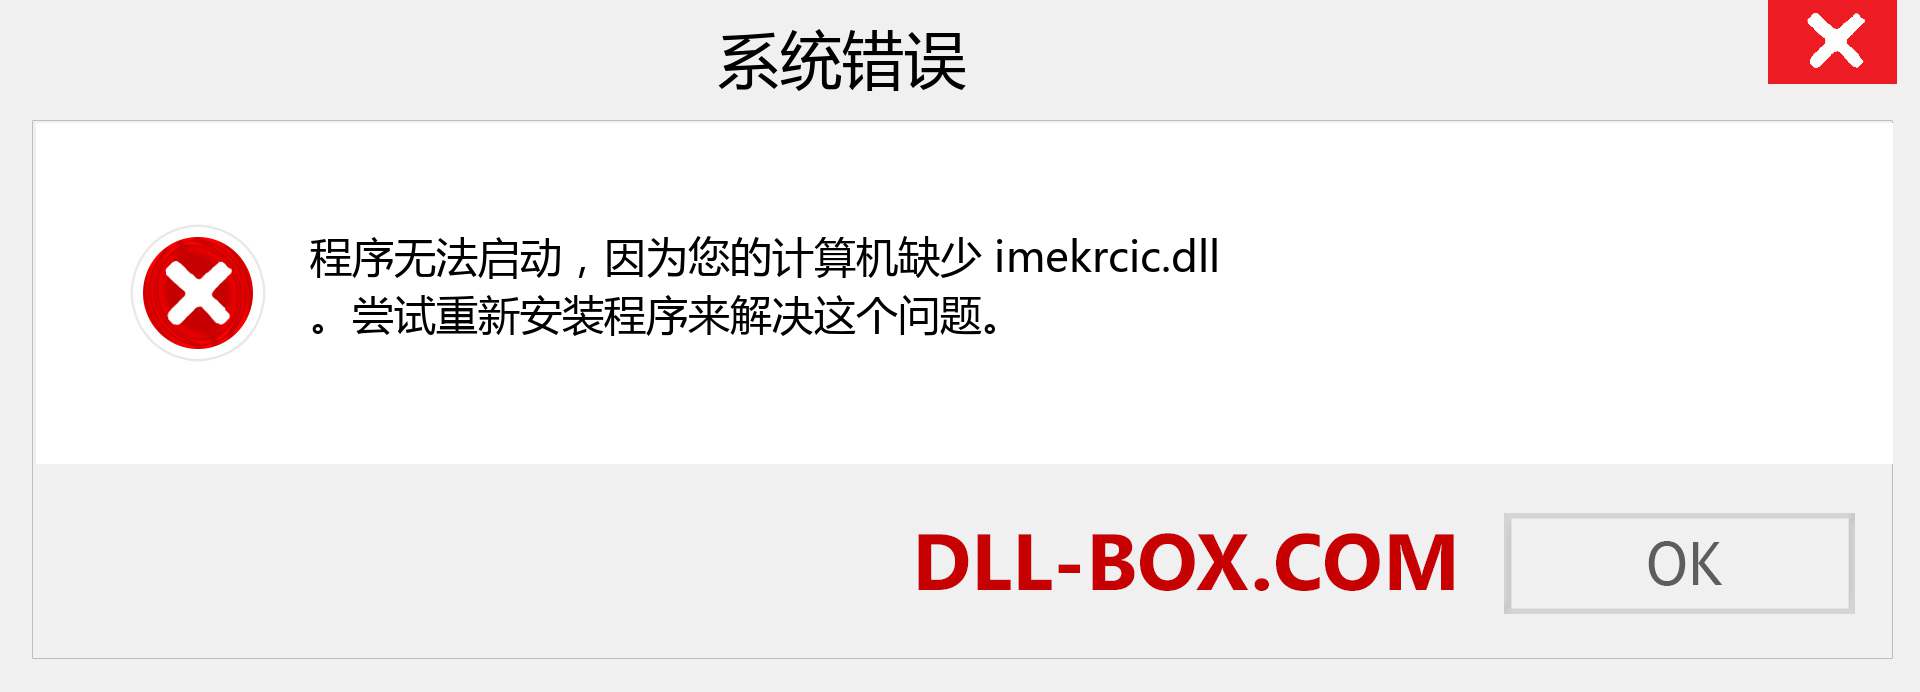 imekrcic.dll 文件丢失？。 适用于 Windows 7、8、10 的下载 - 修复 Windows、照片、图像上的 imekrcic dll 丢失错误